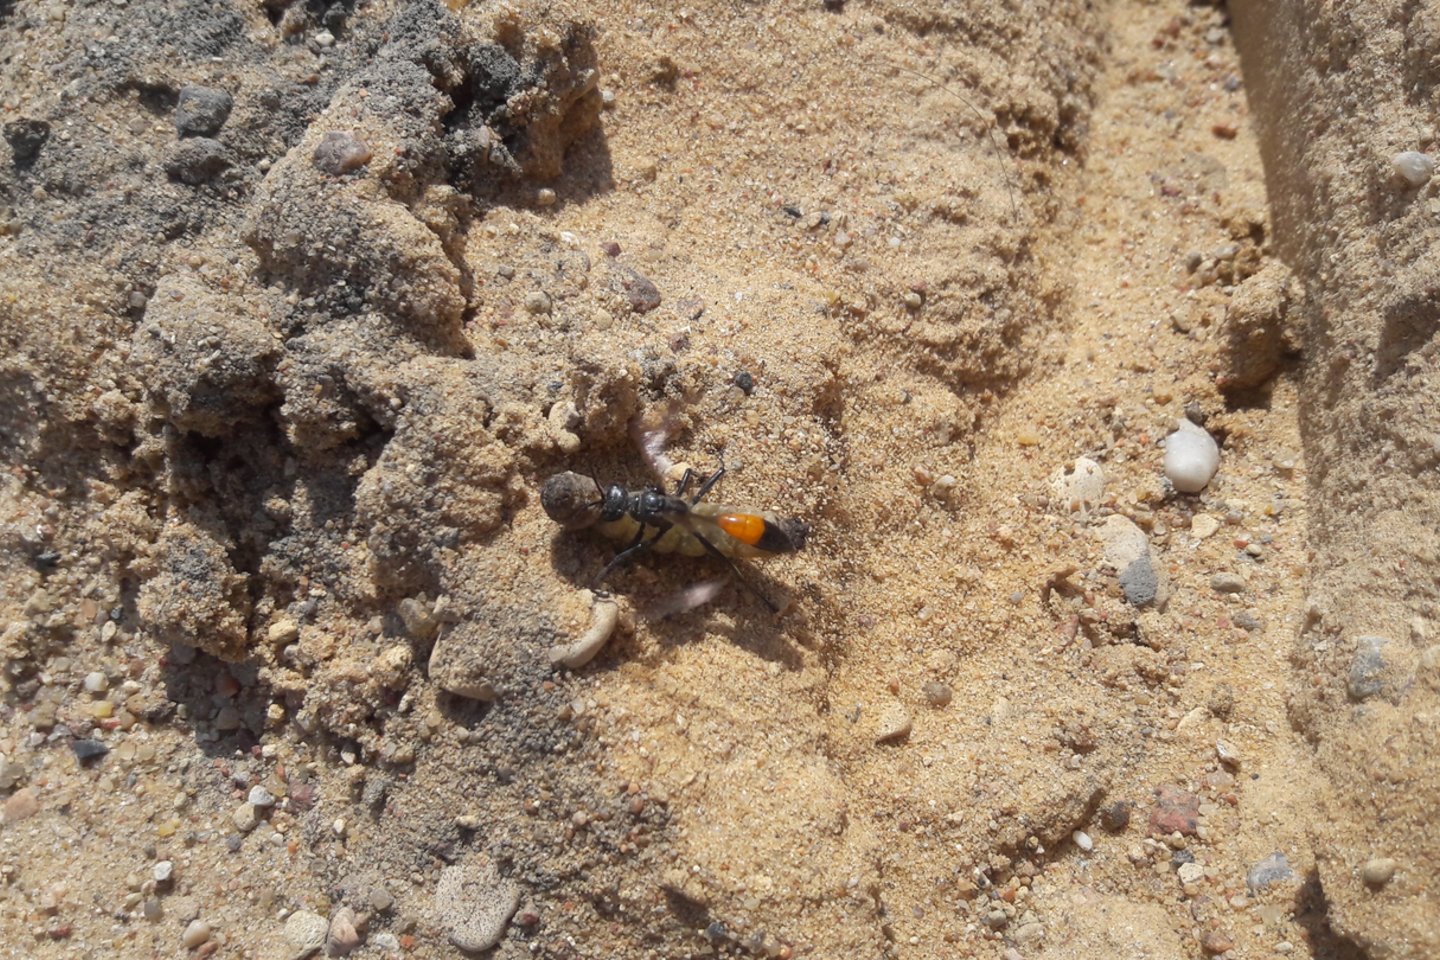  Entomologijos laboratorijos vadovas Sigitas Podėnas trumpai ir aiškiai atsakė: „Tai – smėlinė amofila (lot. Ammophila sabulosa)“.<br>V. Janulevičiaus nuotr.